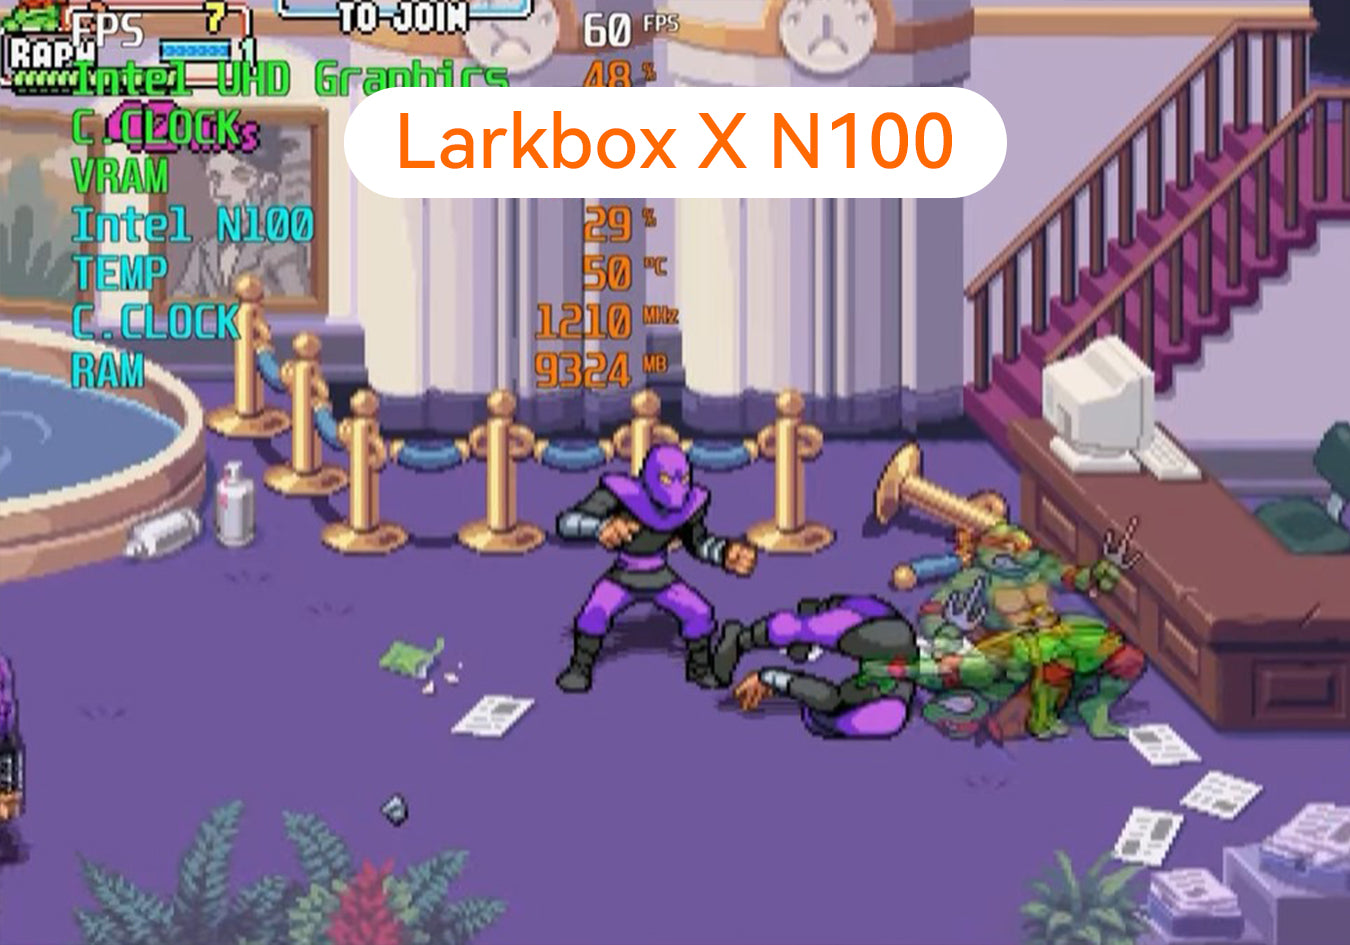 Larkbox X N100: Videogames Scz enseña todo con emuladores y juegos